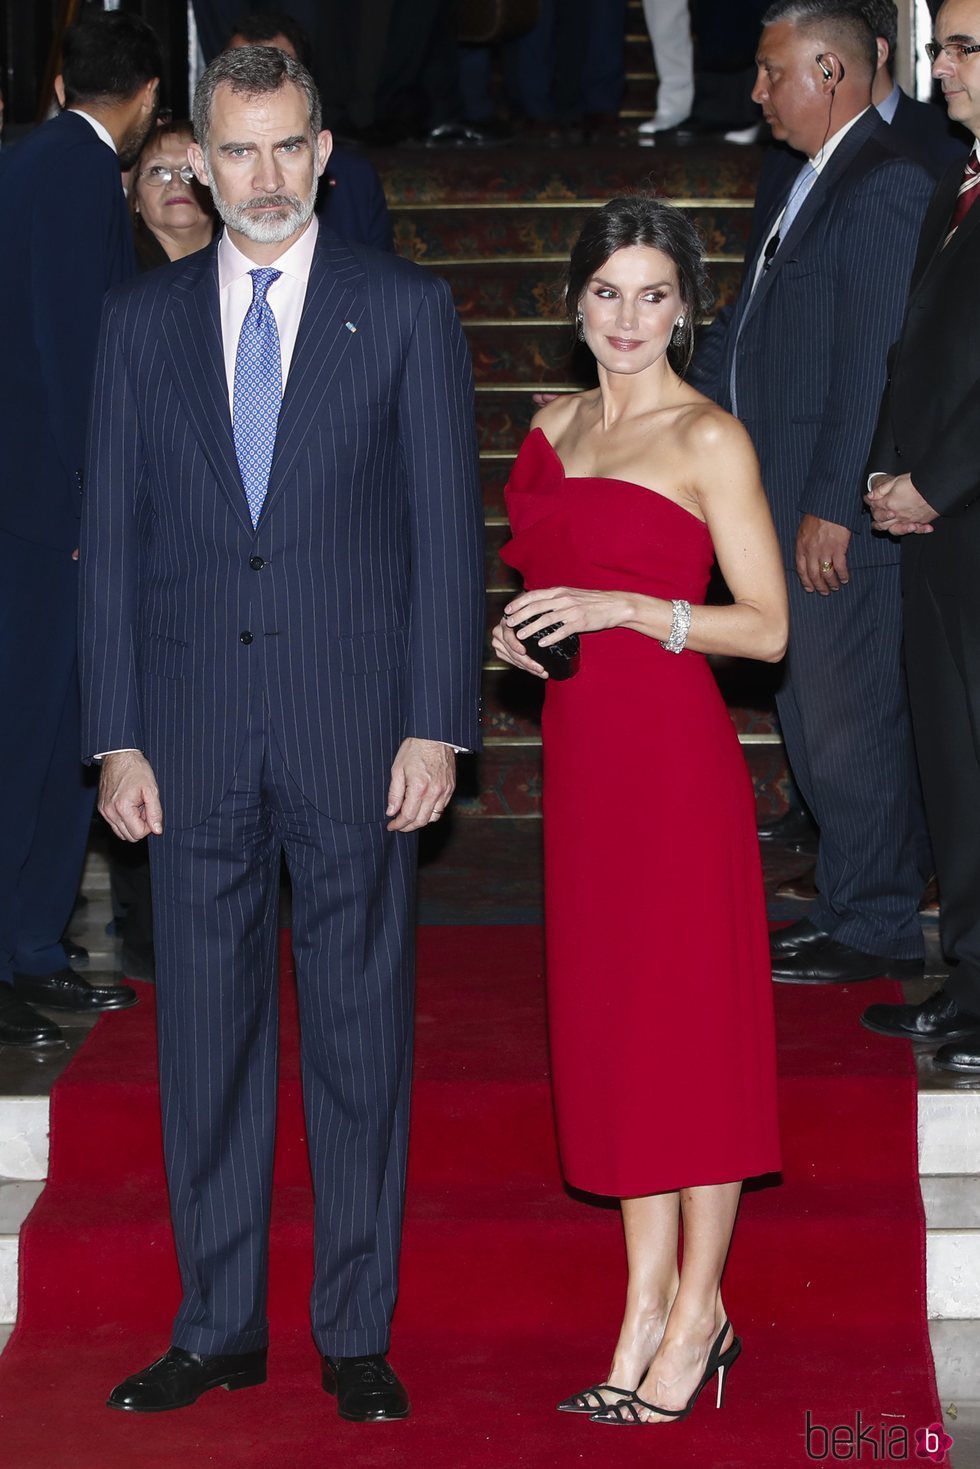 El Rey Felipe VI y la Reina Letizia en la cena de honor al Presidente Macri y la Primera Dama durante su Viaje de Estado a Argentina